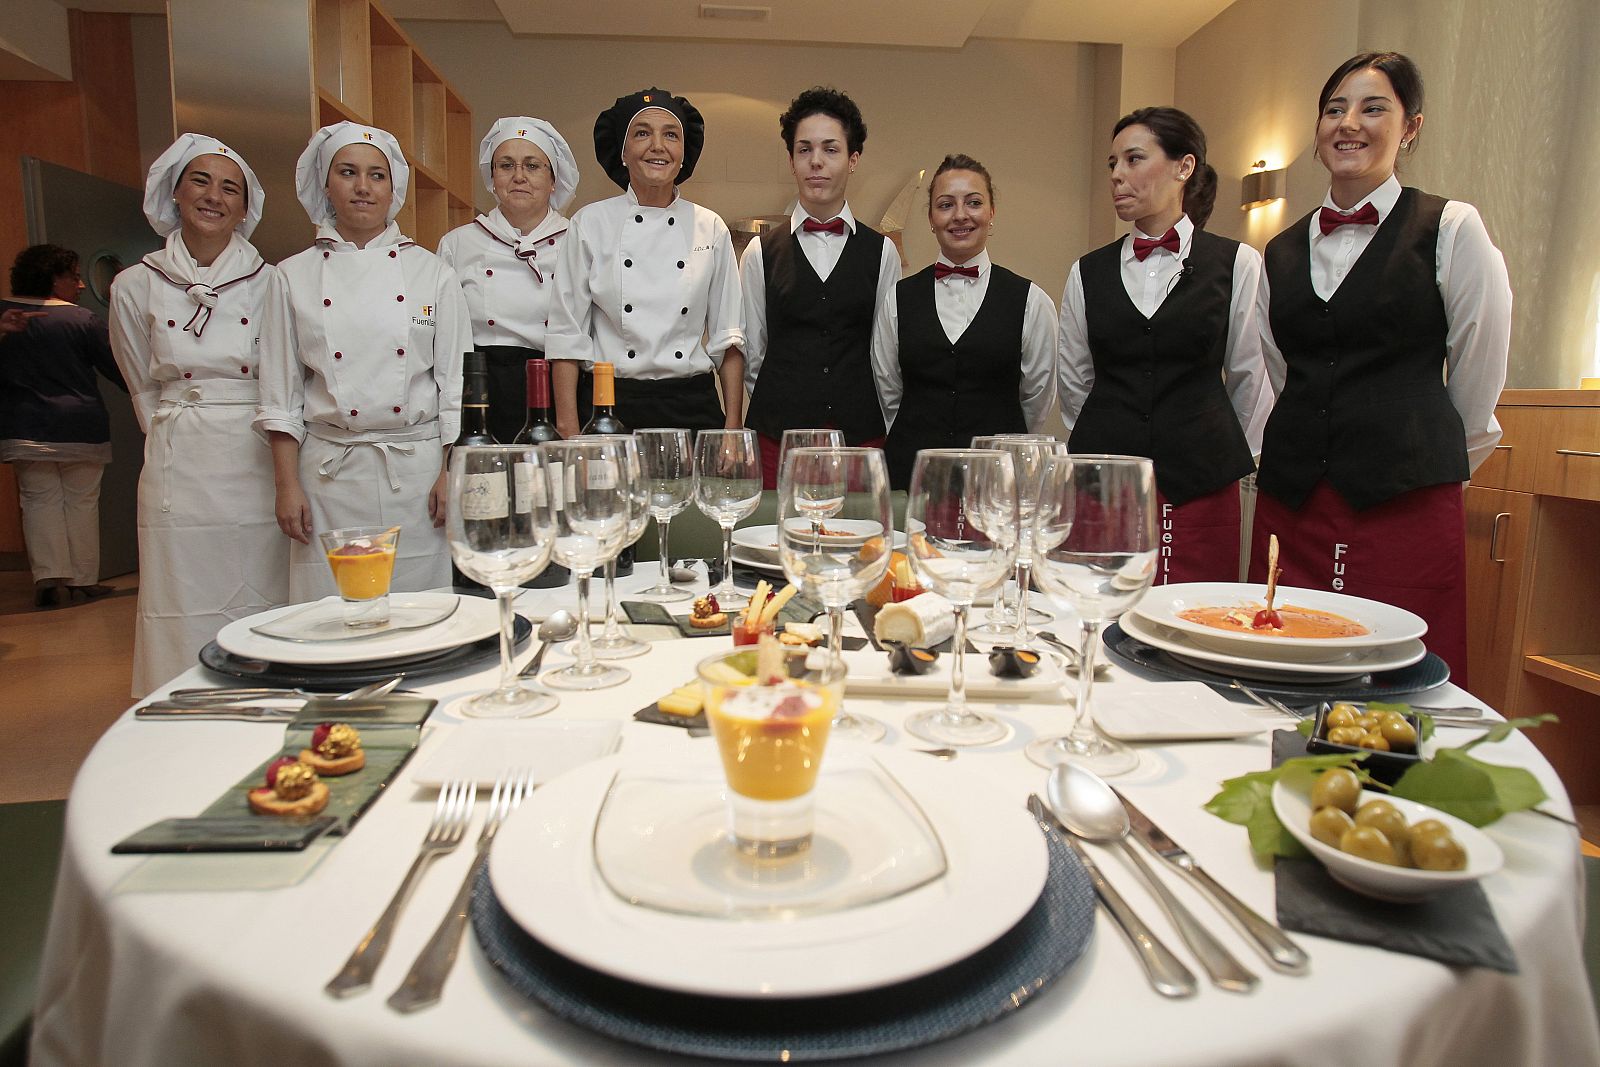 Cocineras y camareras de la Escuela de Hostelería Fuenllana, ante varios de los platos que el Papa degustará en la JMJ